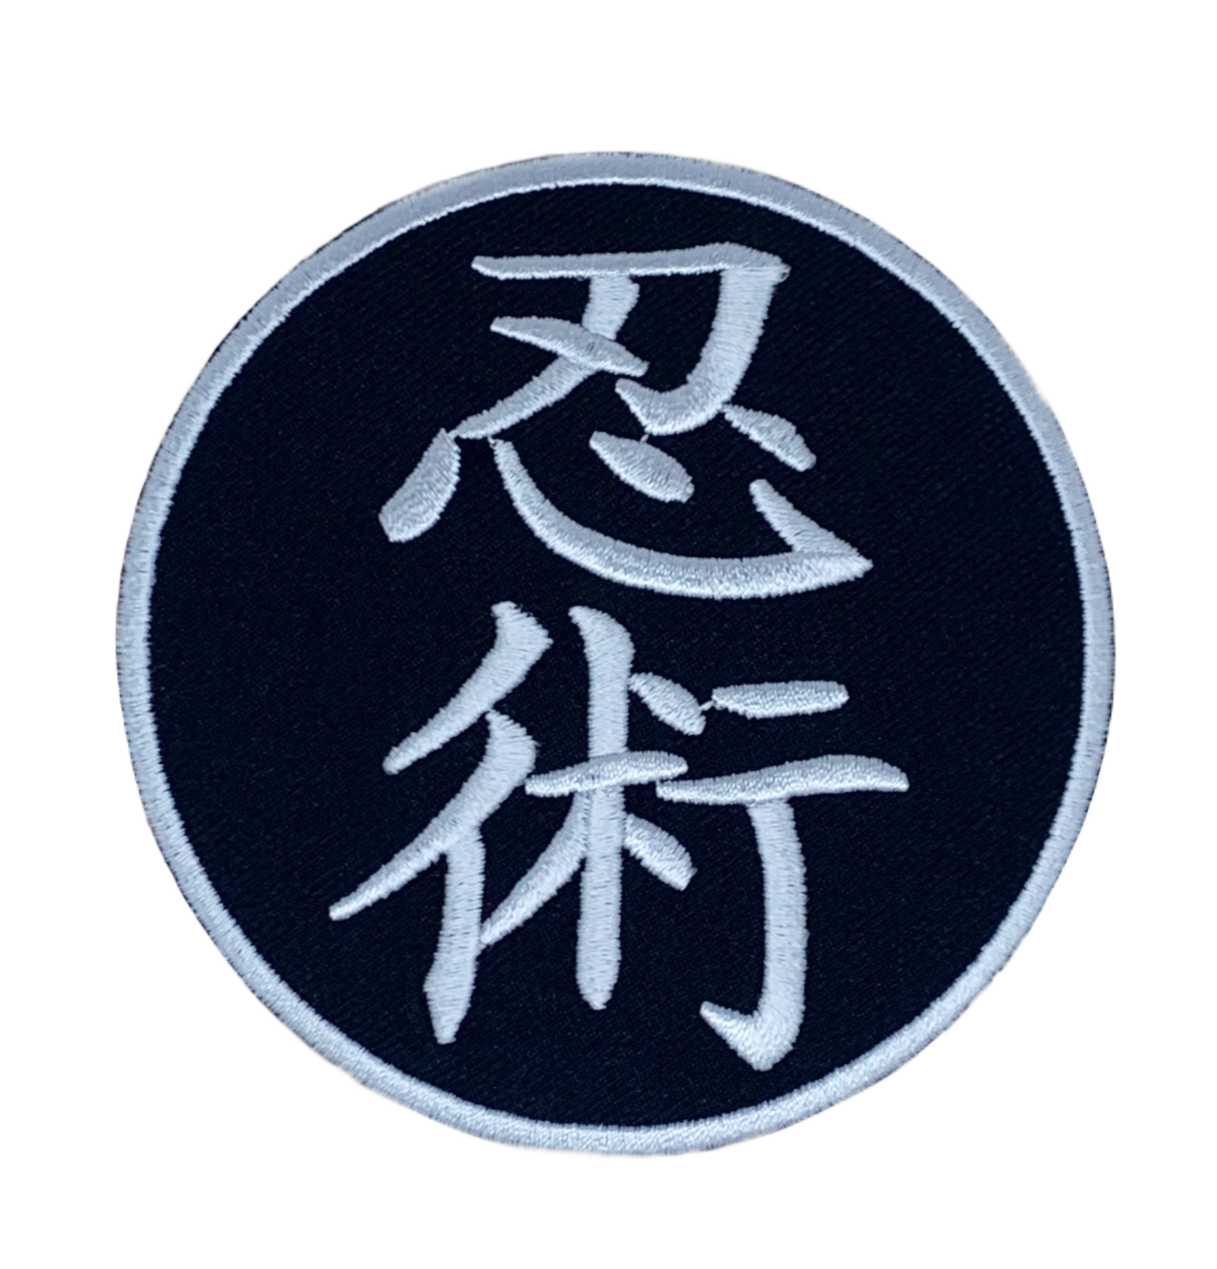 Ninjutsu Patch (3.5 Inch) Iron or Sew-On Badge Bujinkan Taijutsu Shihan Martial Arts Kimono Ninja Ninpō Shinobi-jutsu Patches